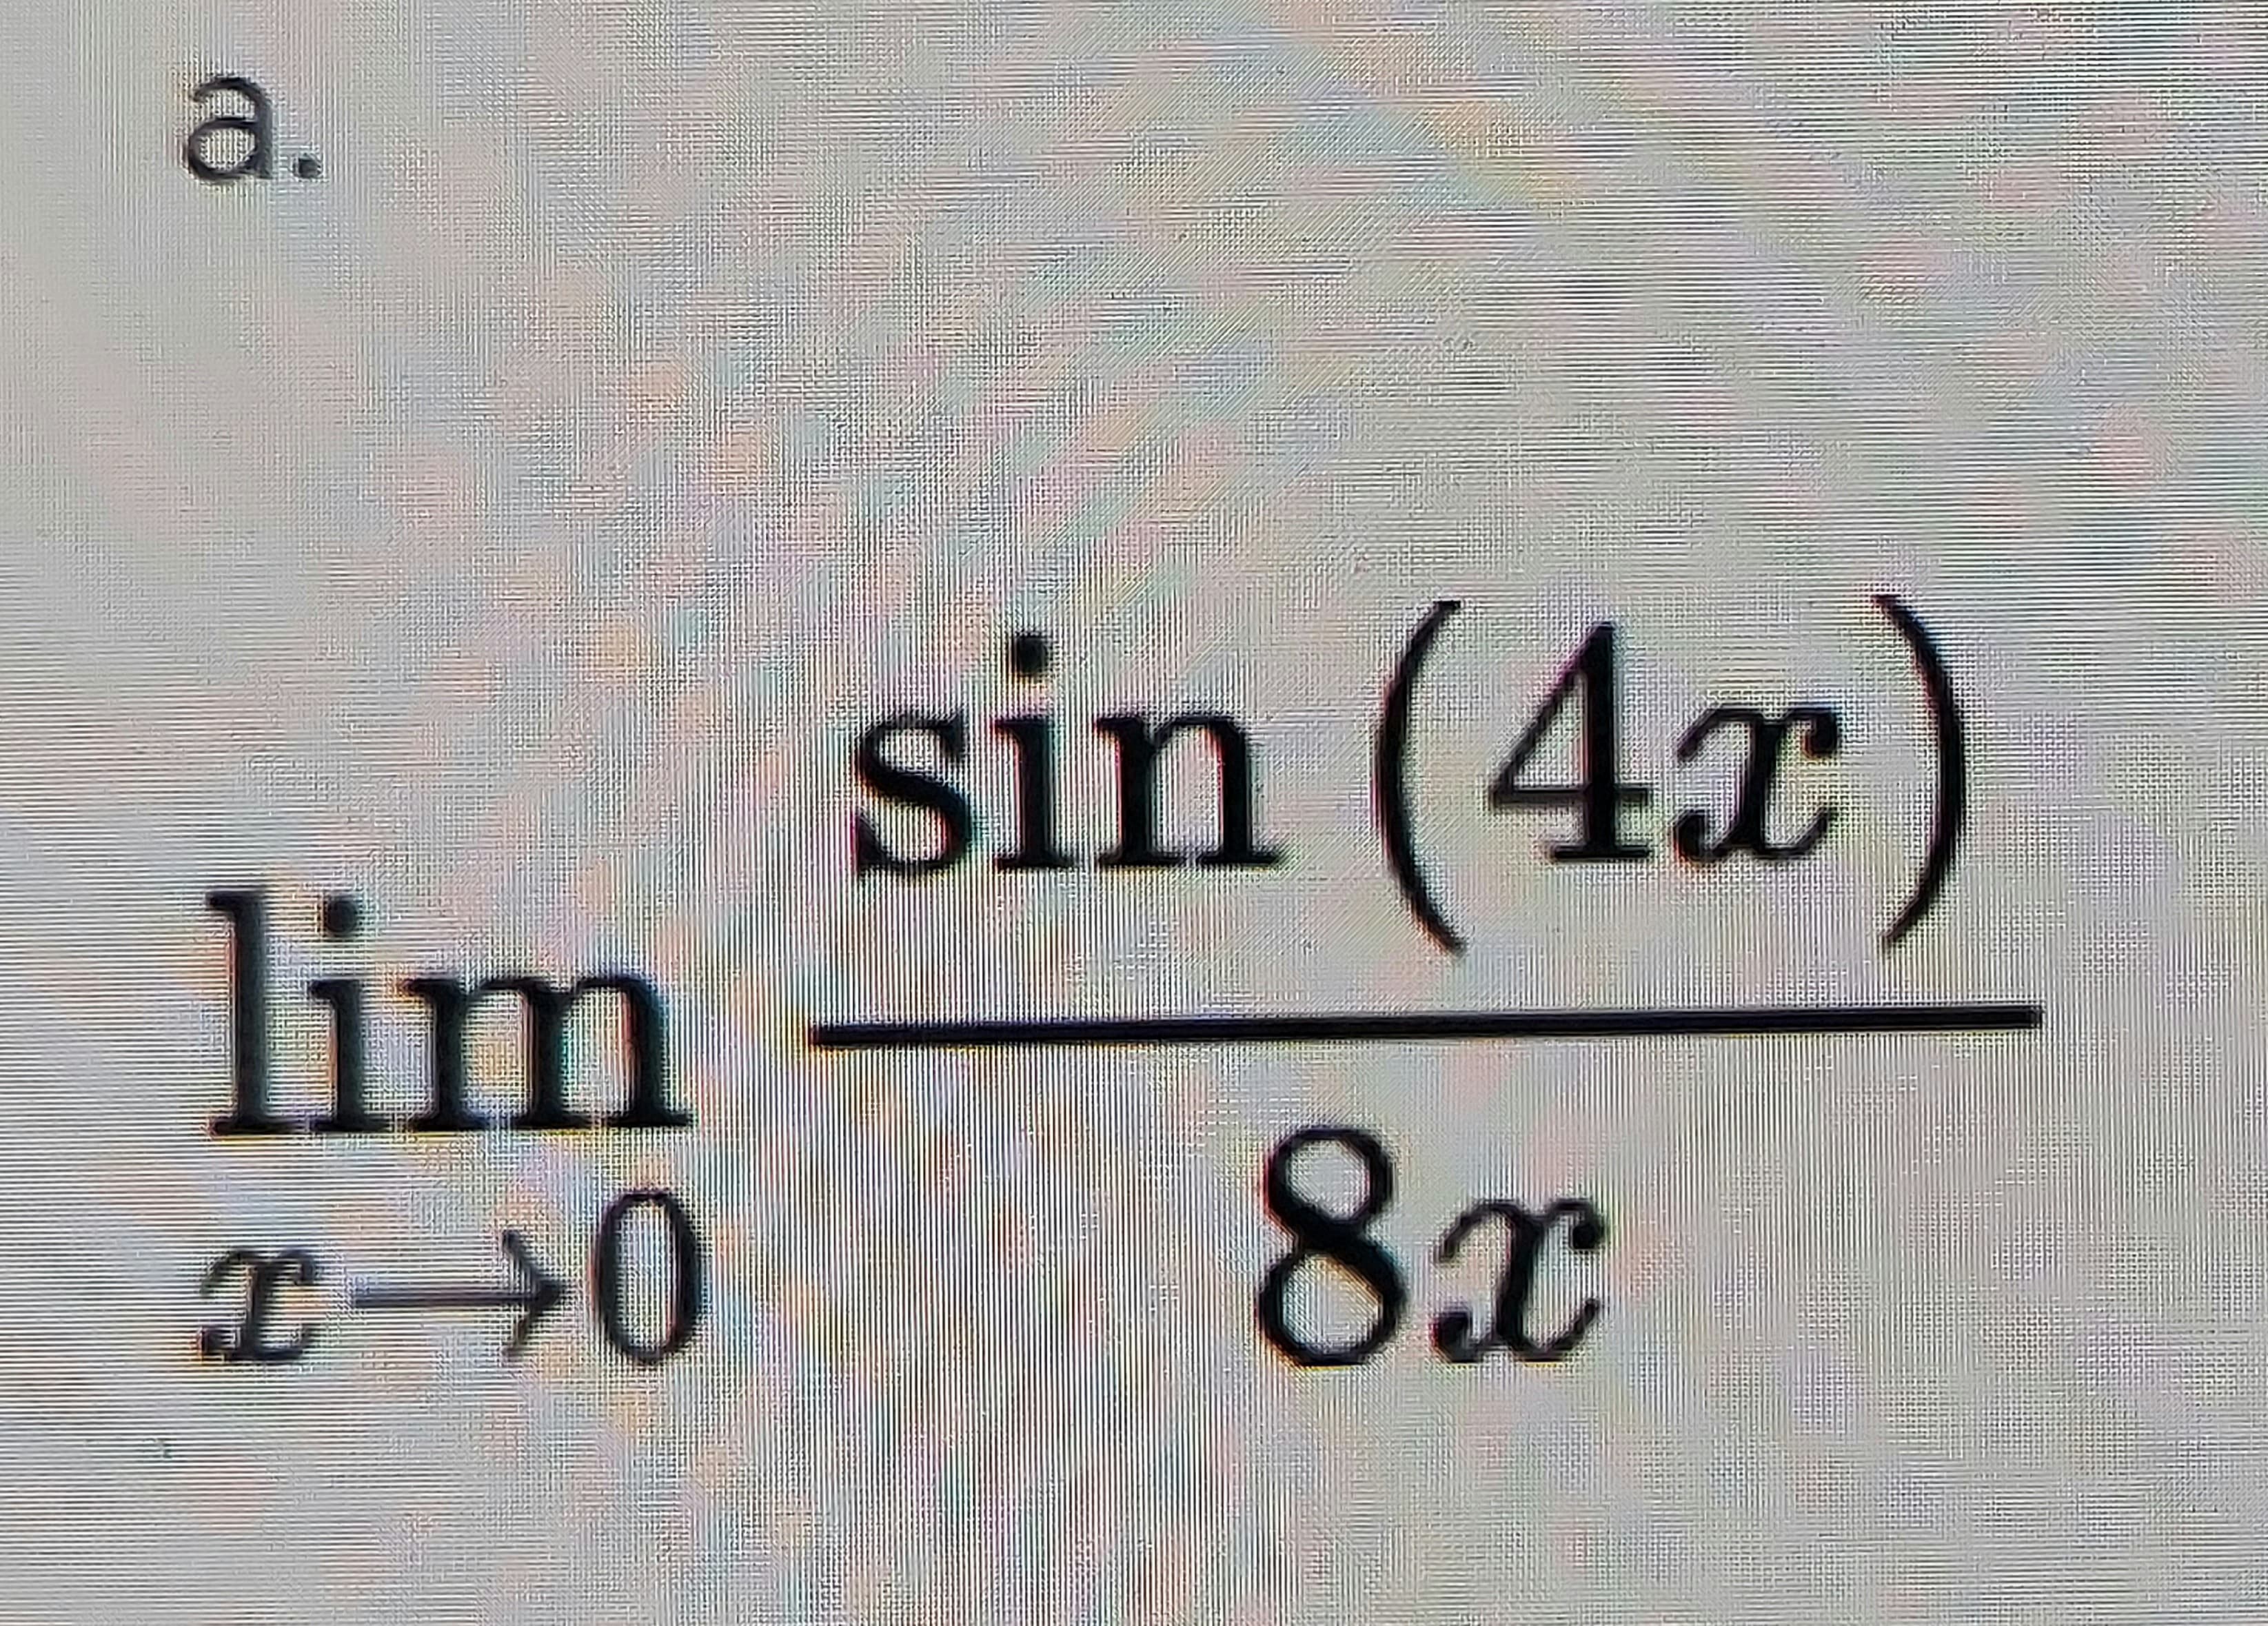 a.
sin (4x)
lim
8x
